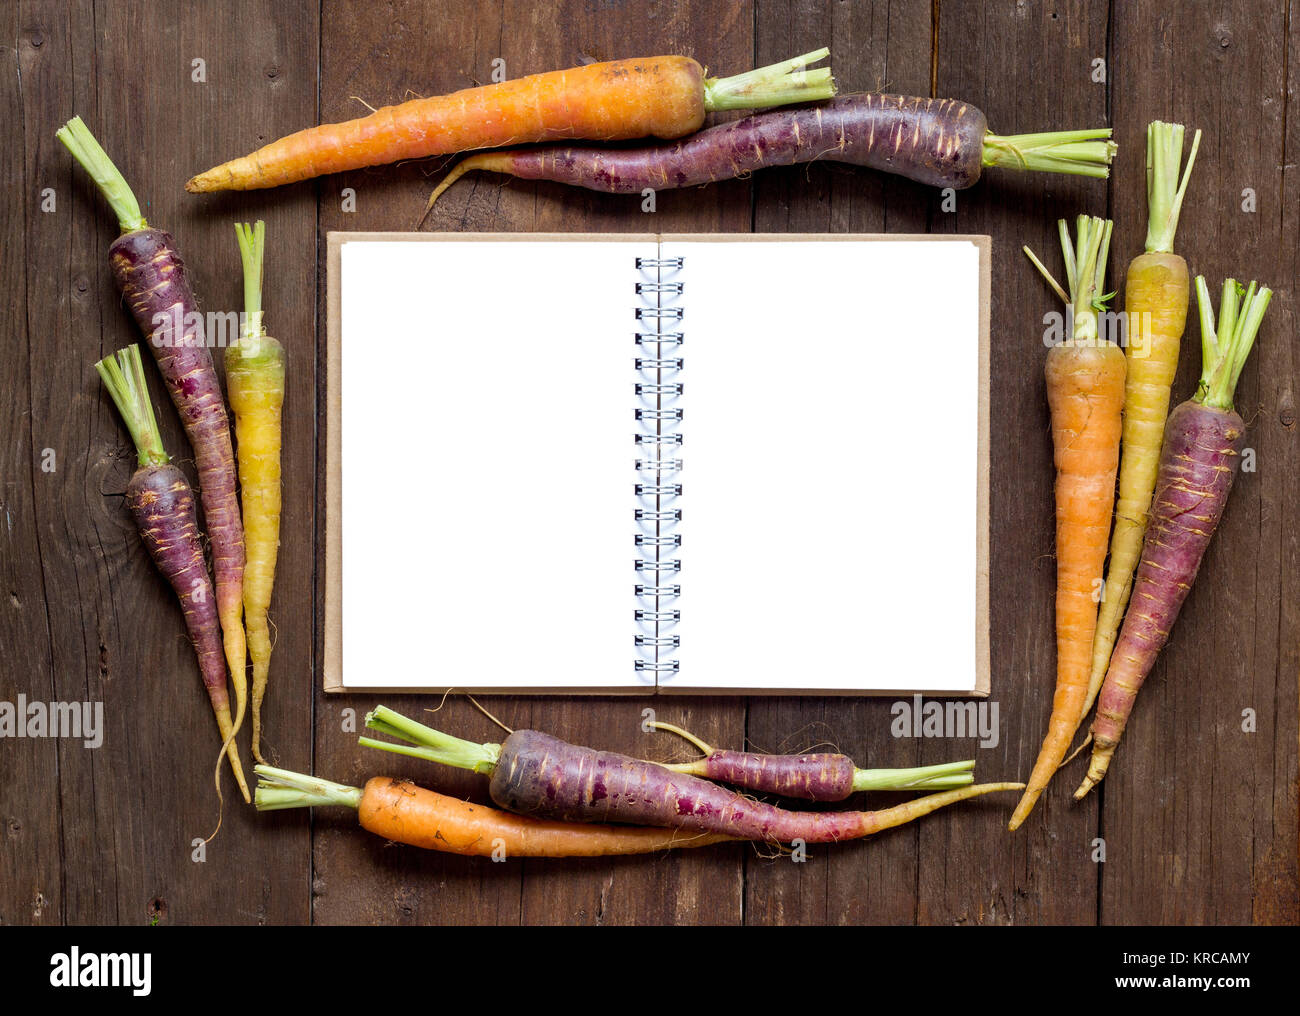 Fresche biologiche rainbow carote con libro delle ricette Foto Stock